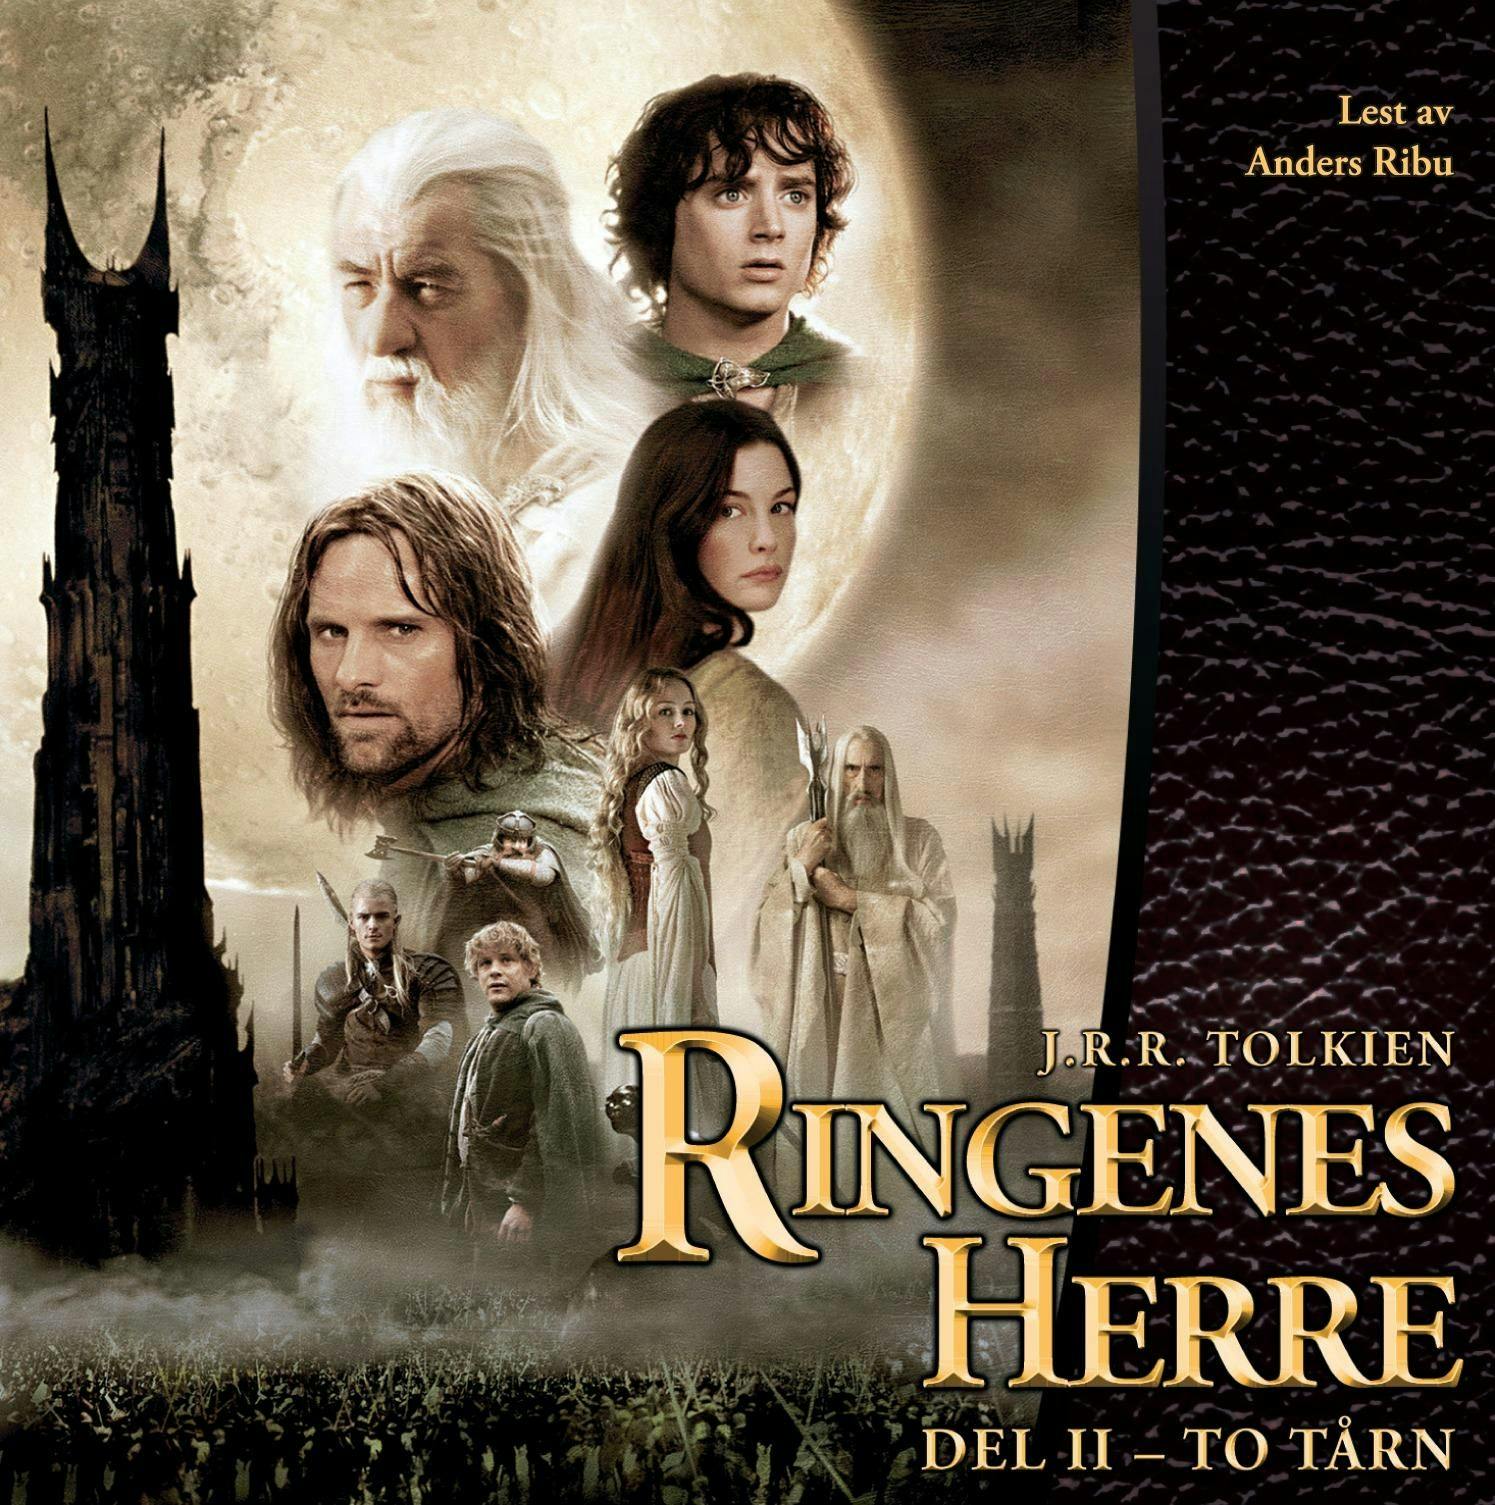 Ringenes herre II - J.R.R. Tolkien